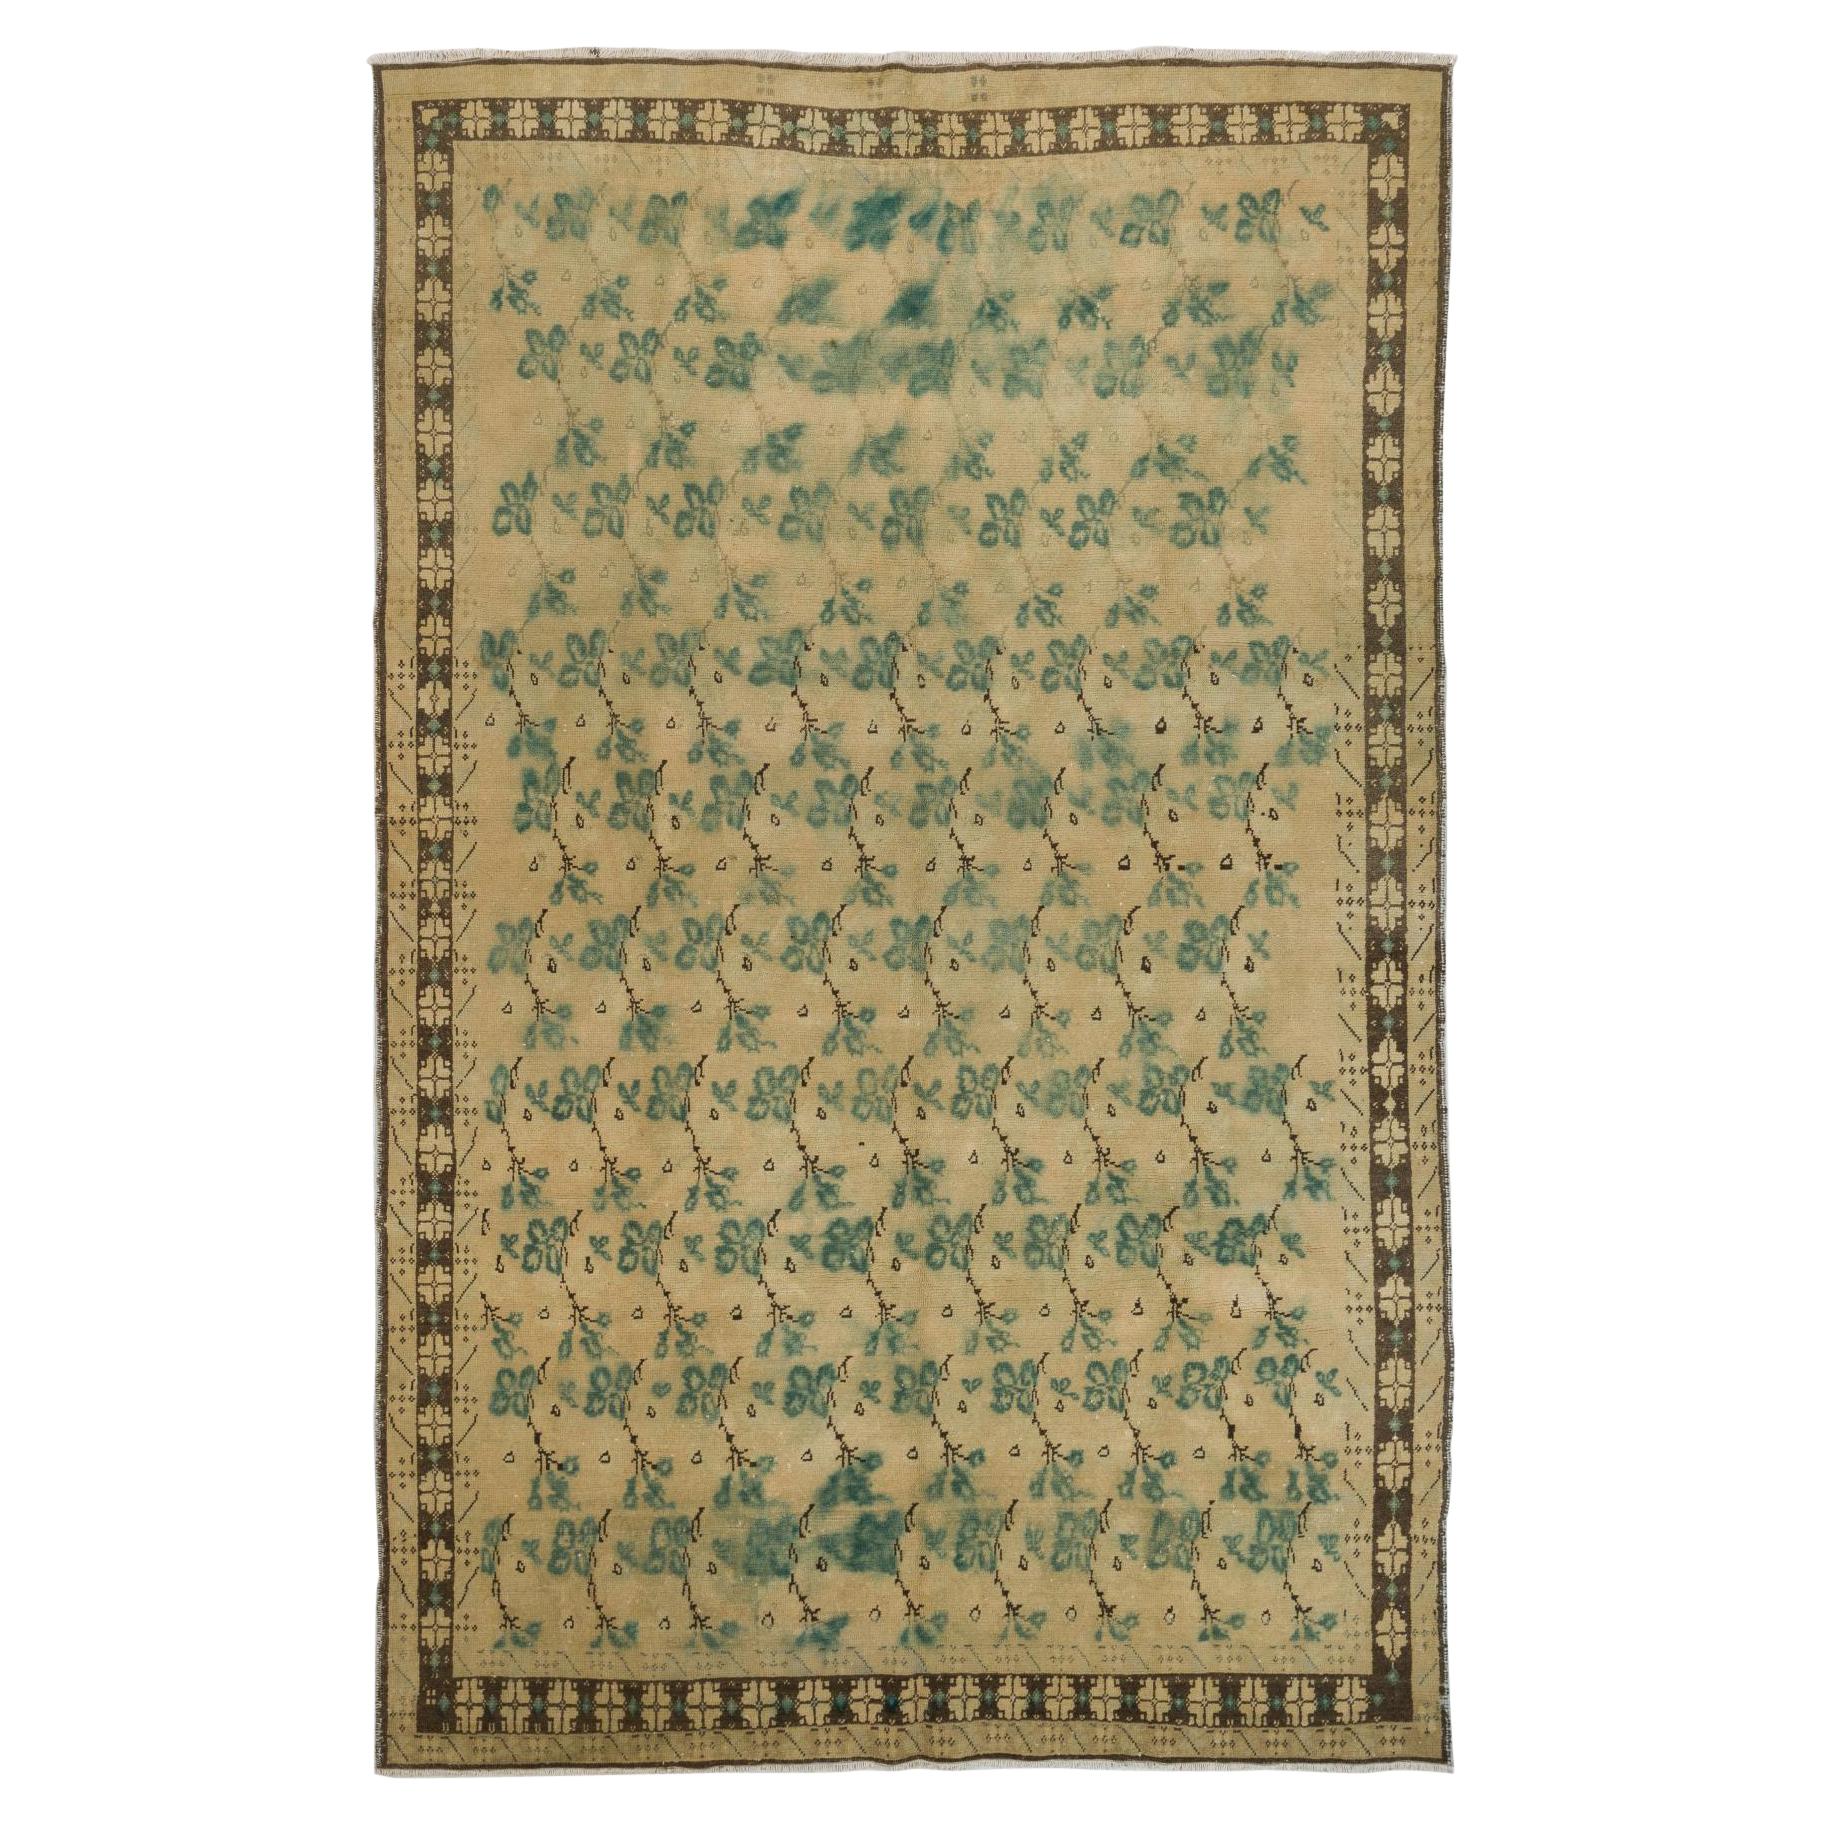 7.4x12 Ft Vintage Handmade Turkish Wool Rug in Beige, Green and Brown Colors